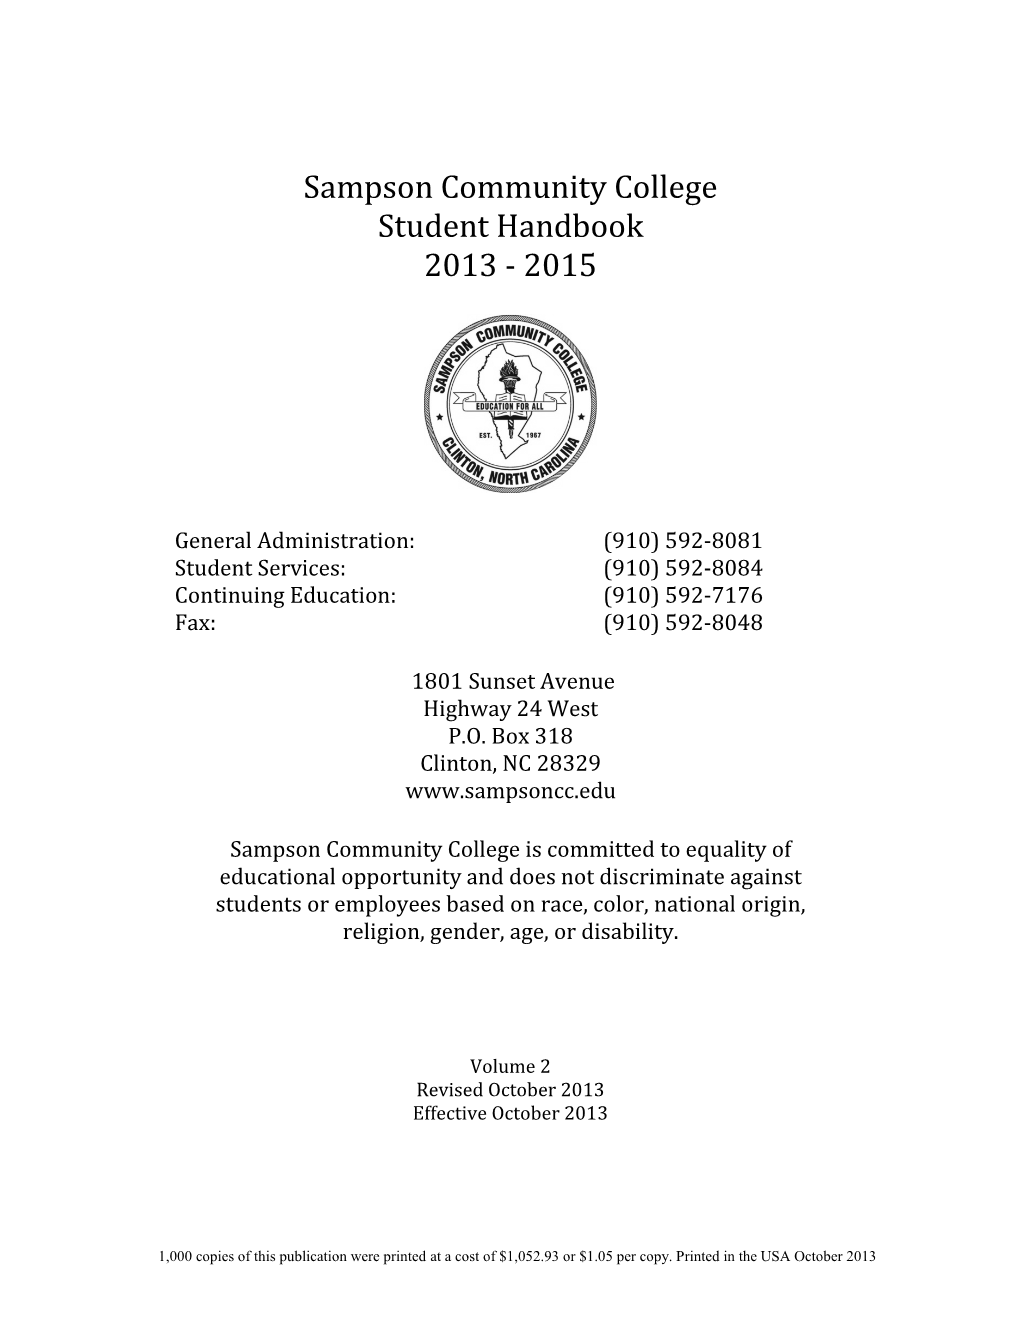 Student Handbook 2013 - 2015